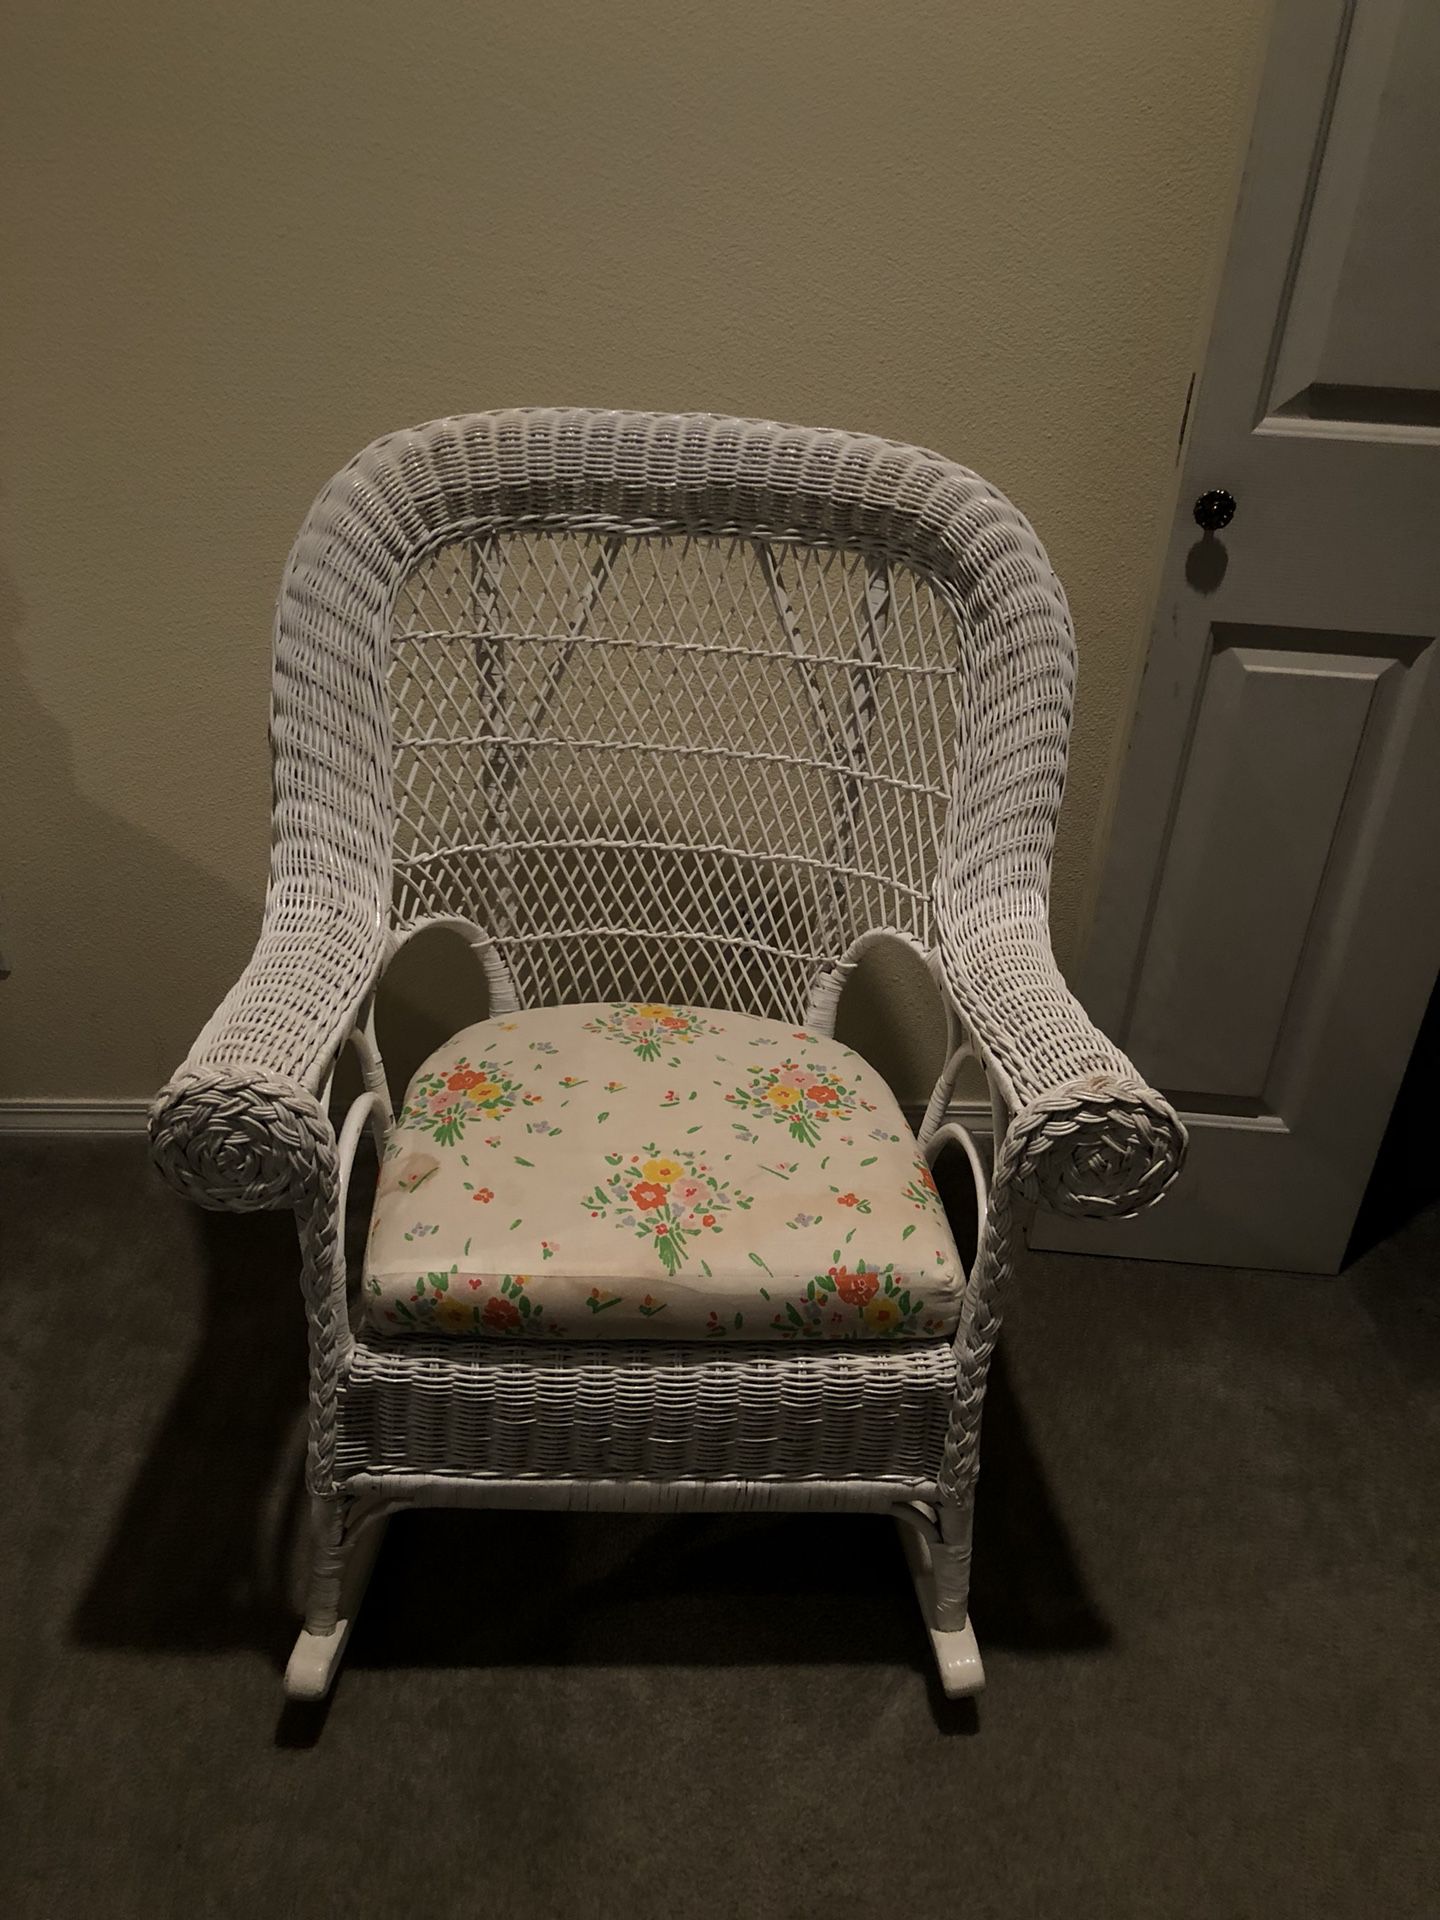 White wicker rocking chair